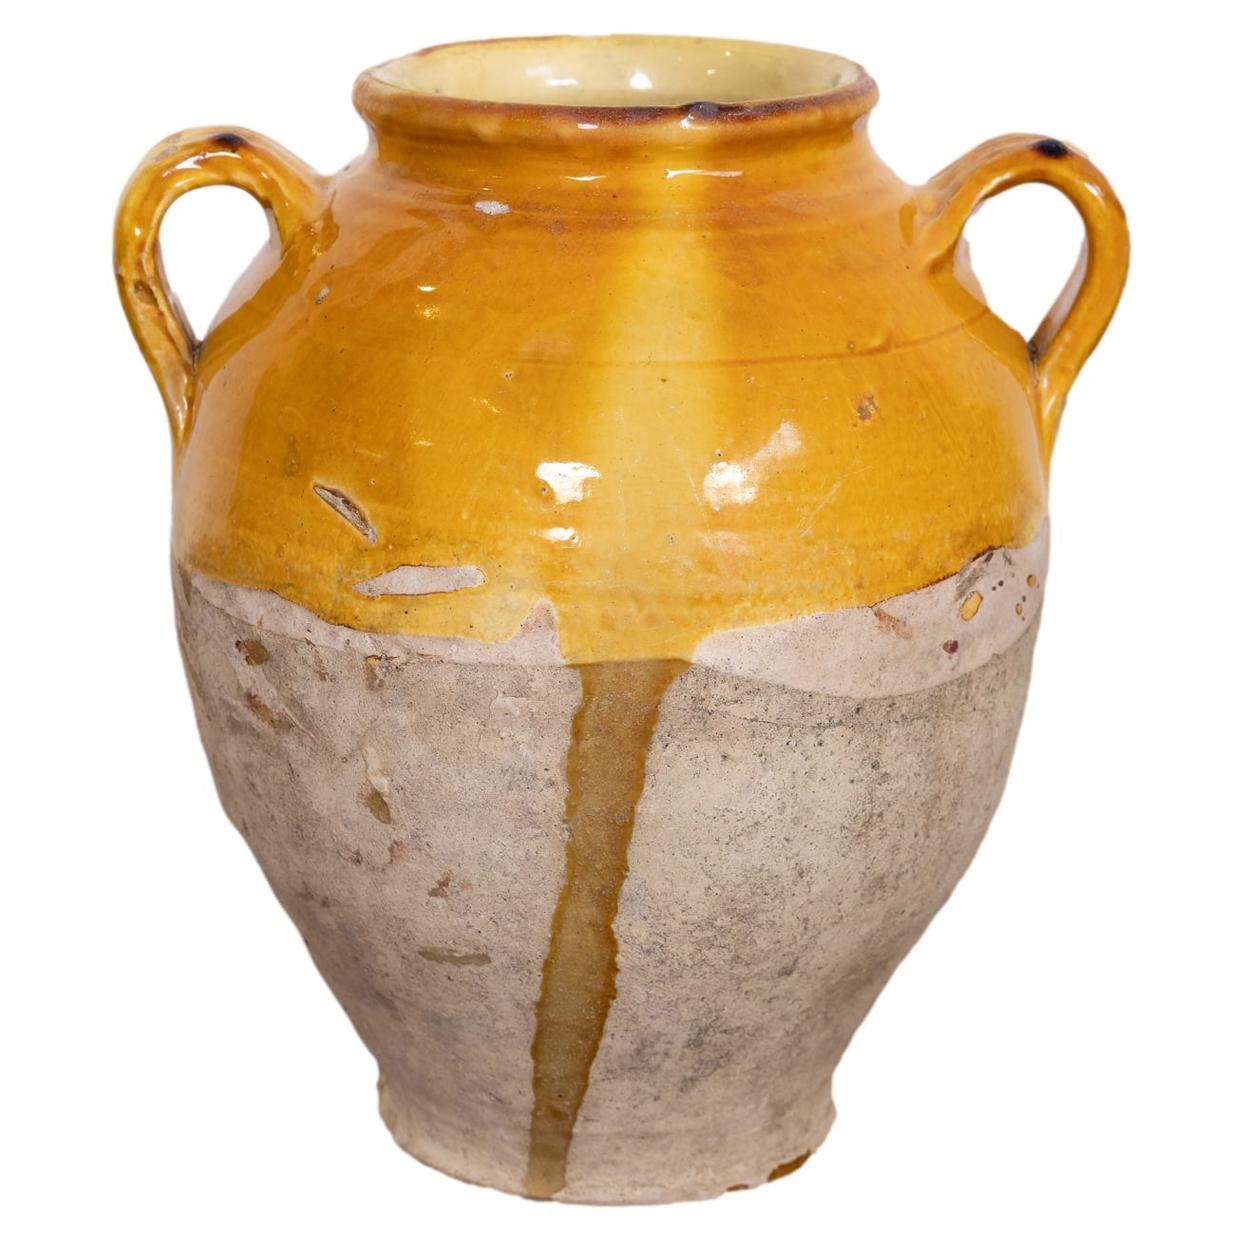 Antique French Confit Pot or Pot de Confit with Yellow Glaze